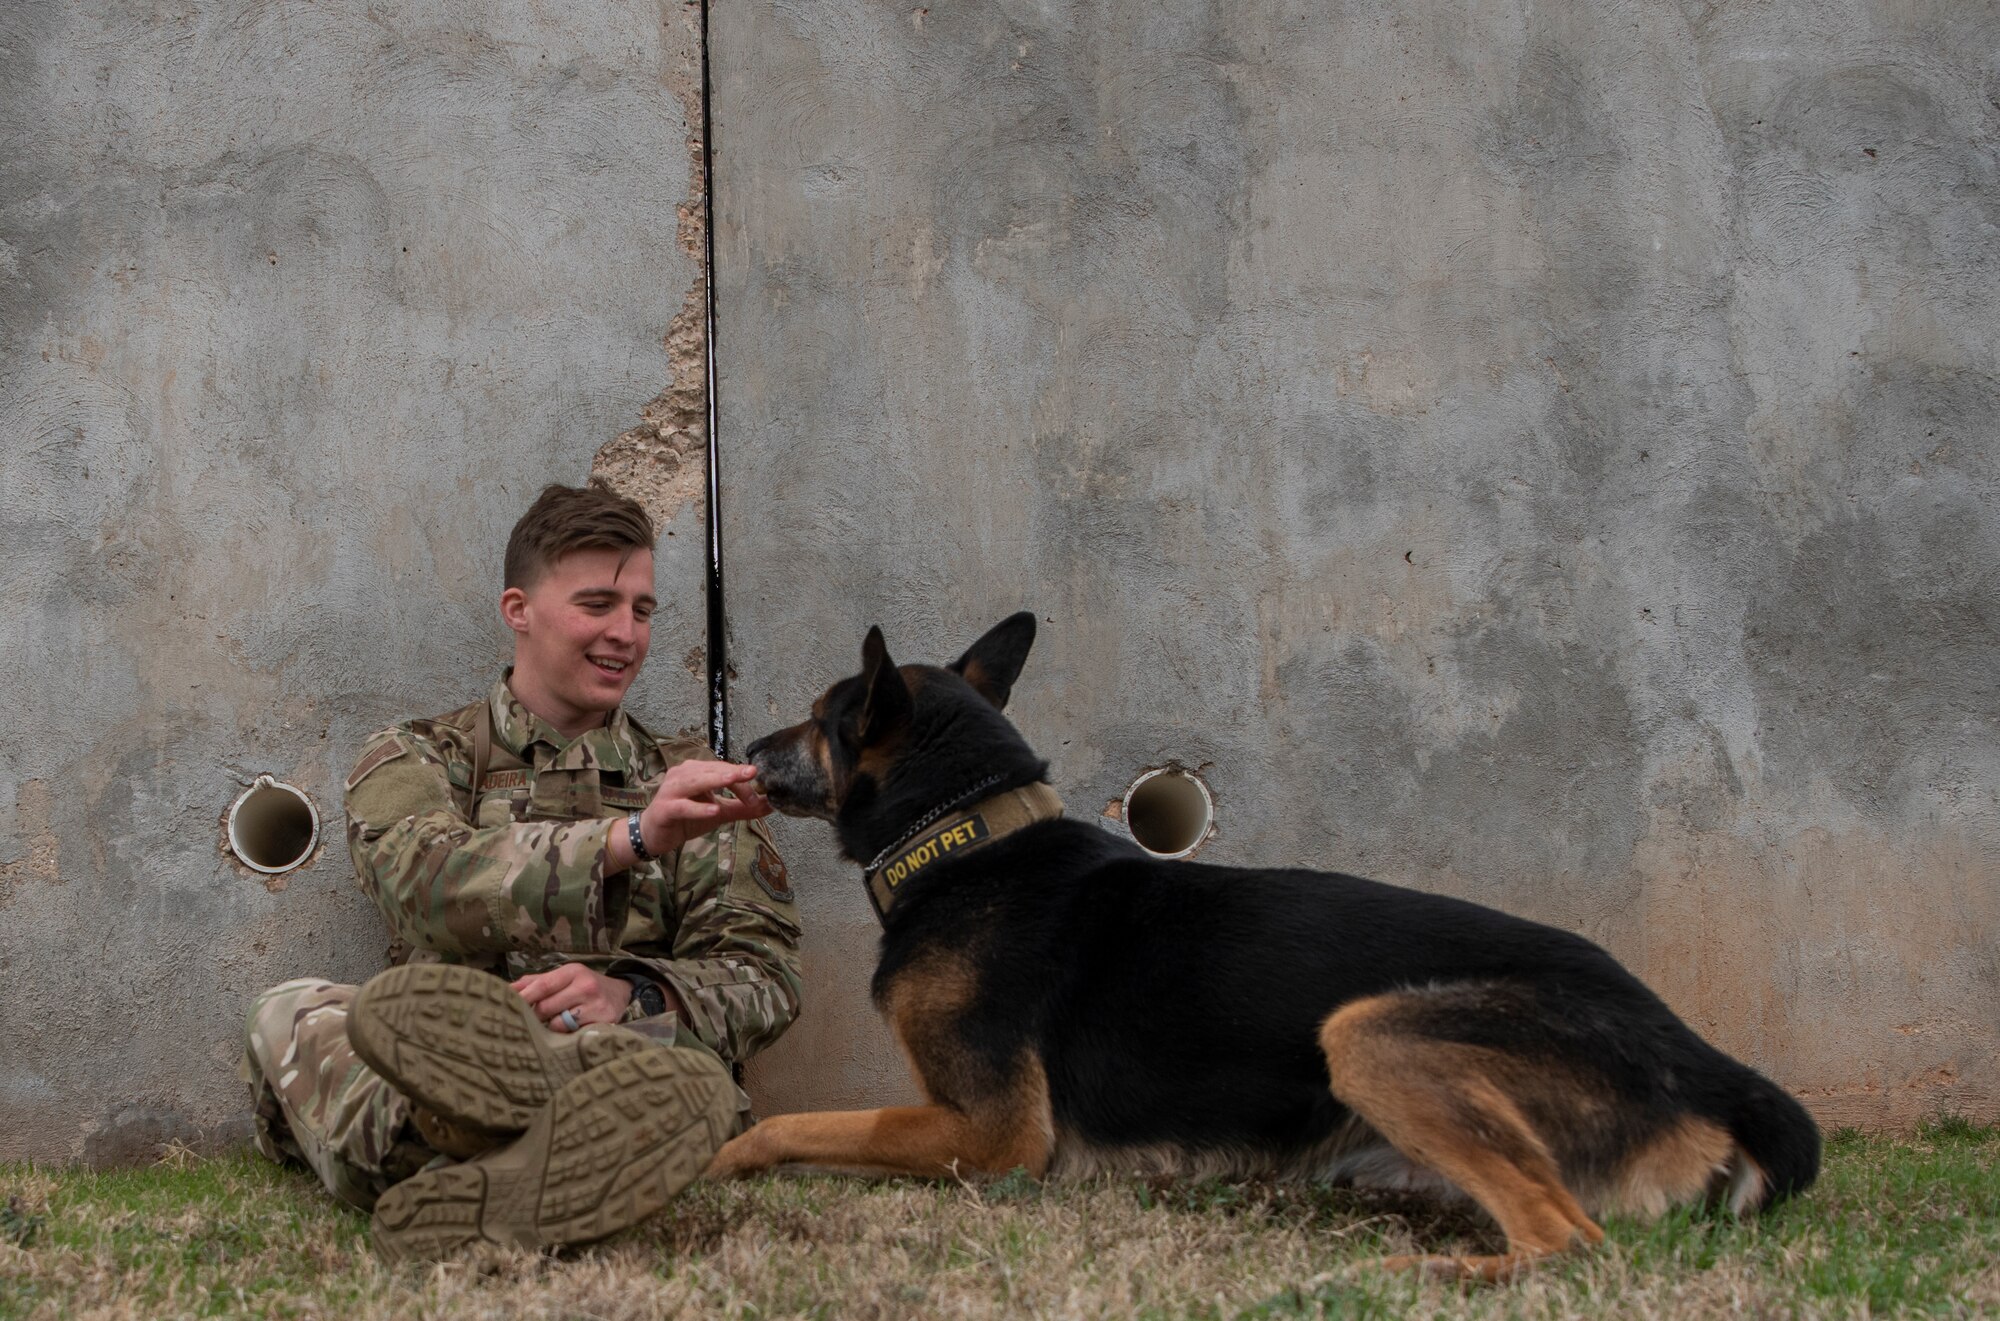 Military working dog handler, and MWD Fix, take a break